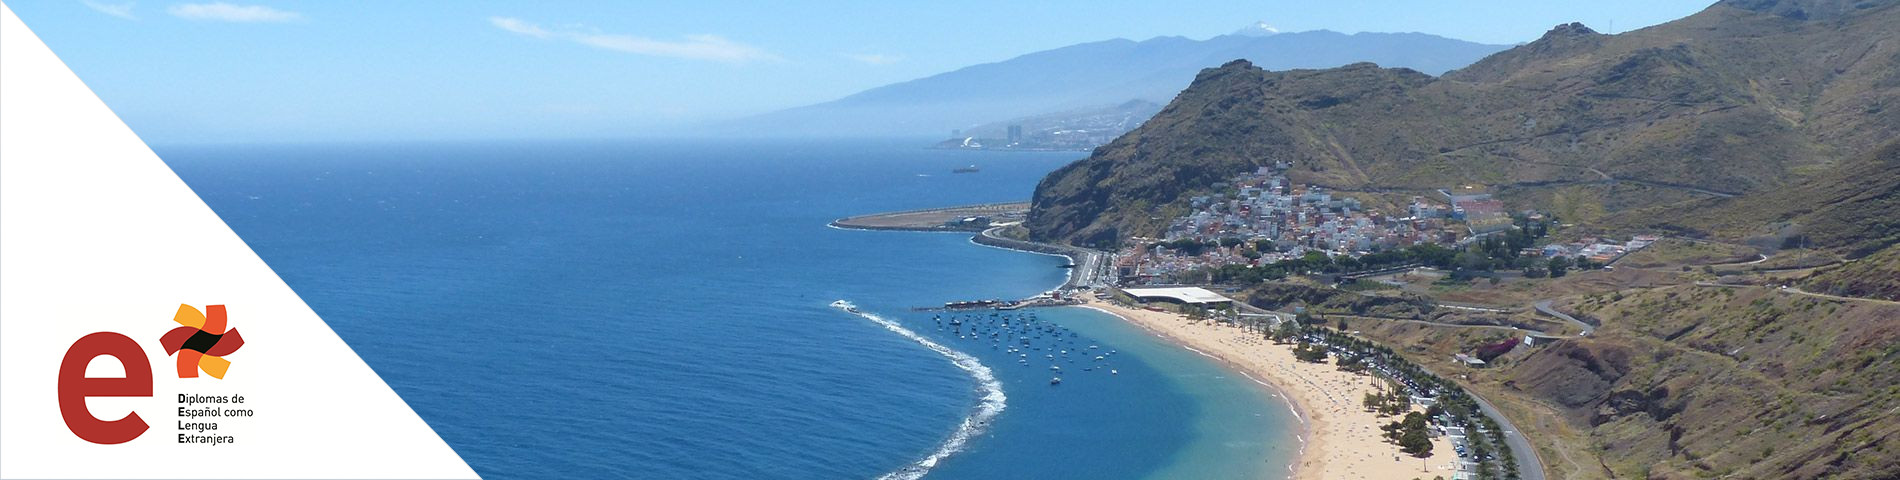 Tenerife - DELE